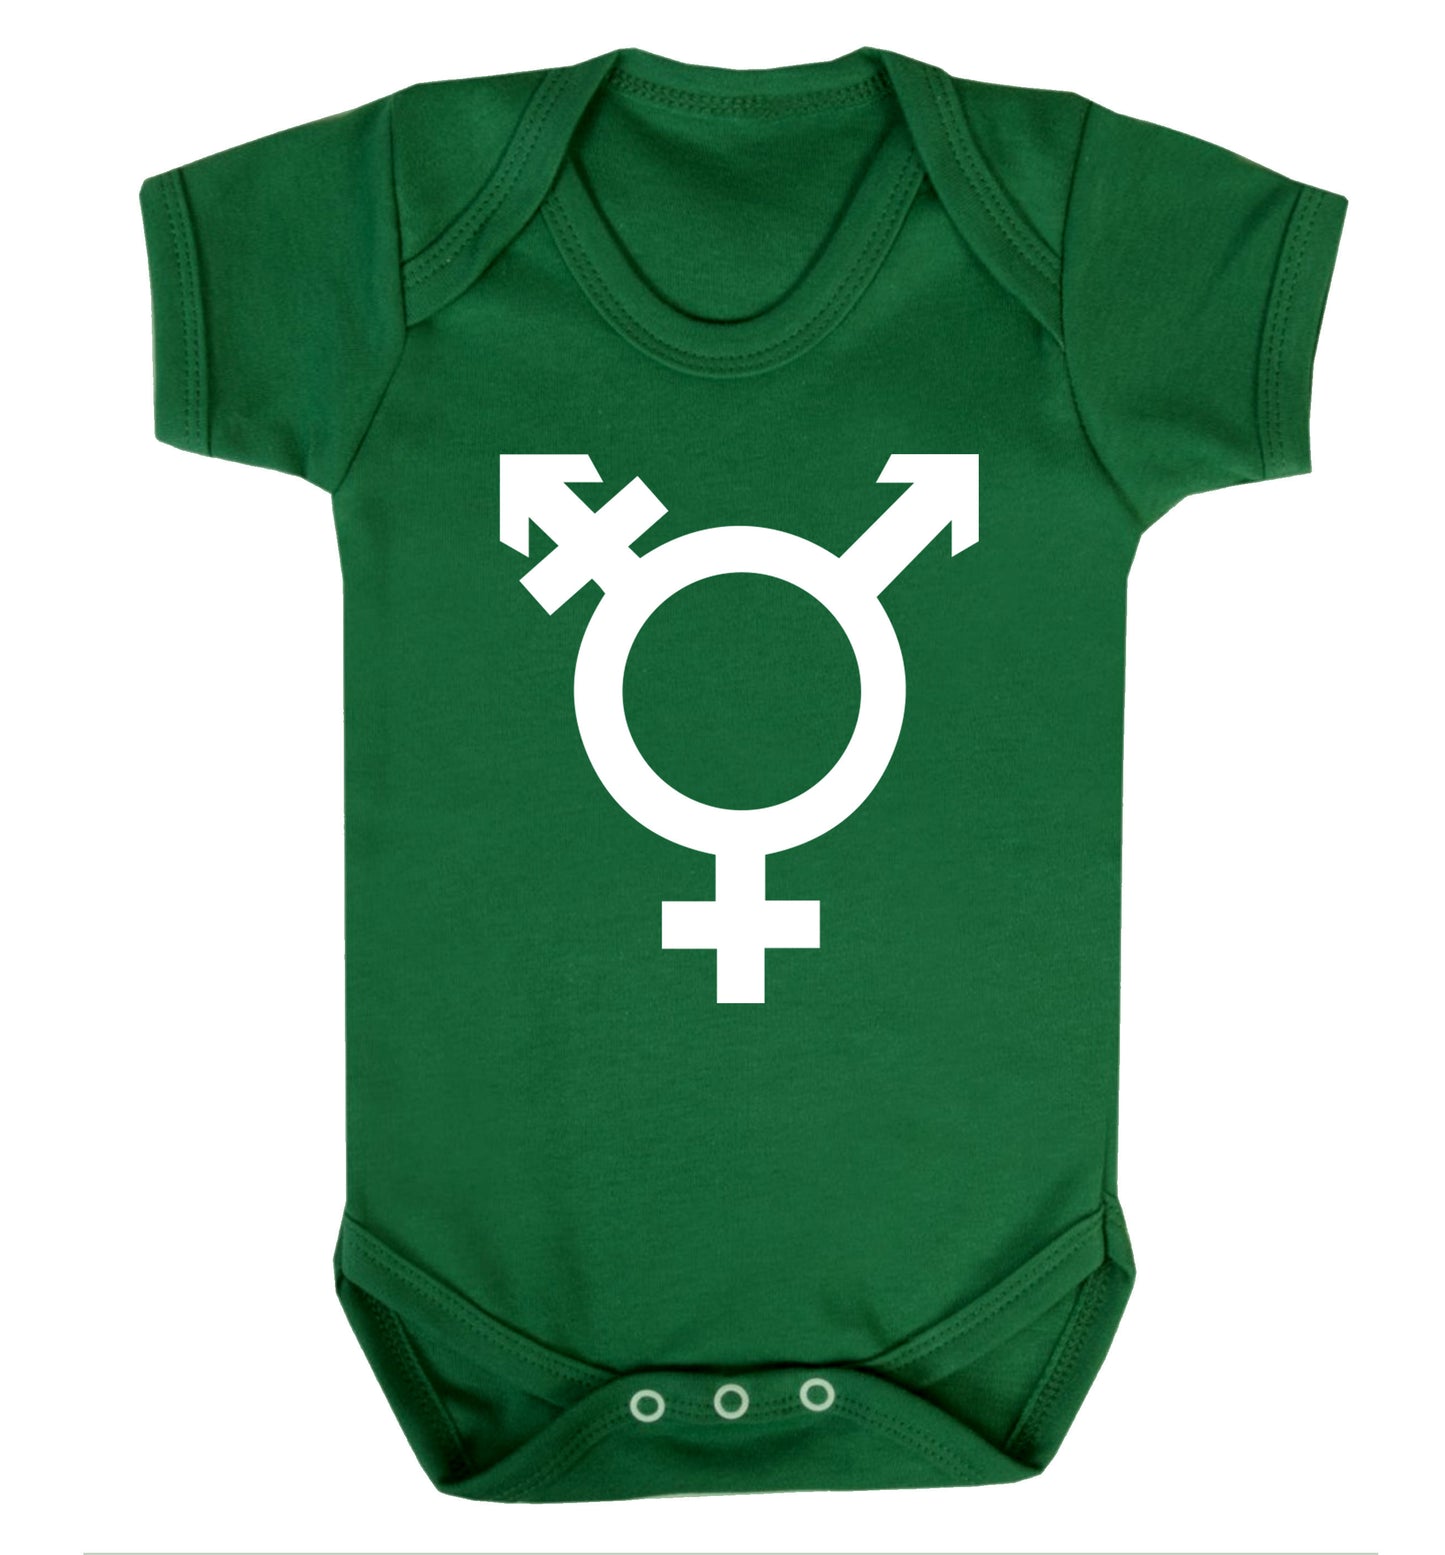 Gender neutral symbol large Baby Vest green 18-24 months